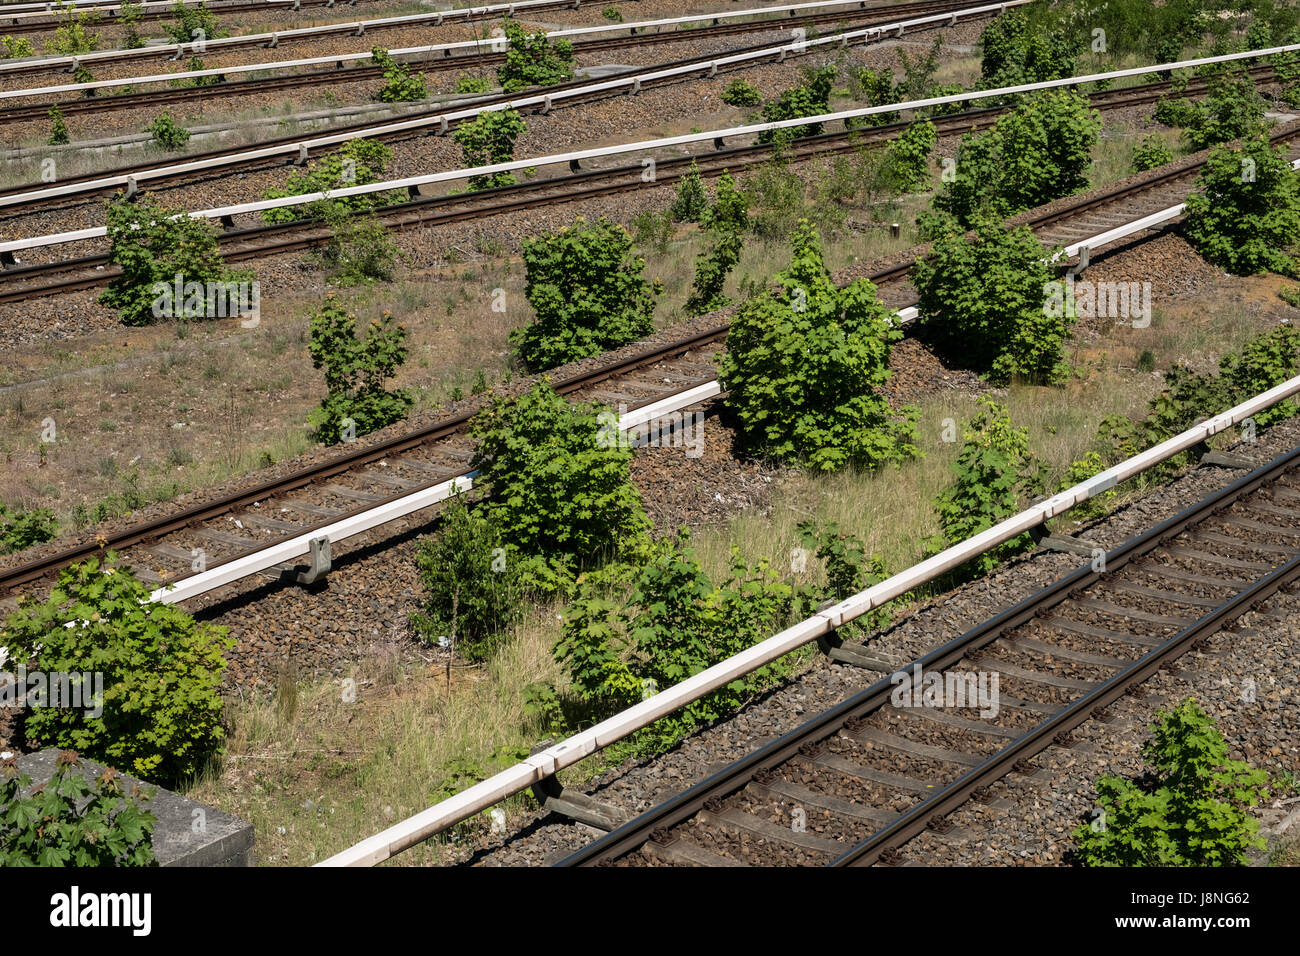 Multi-Lane Eisenbahn - Schiene, Schienennetz Stockfoto